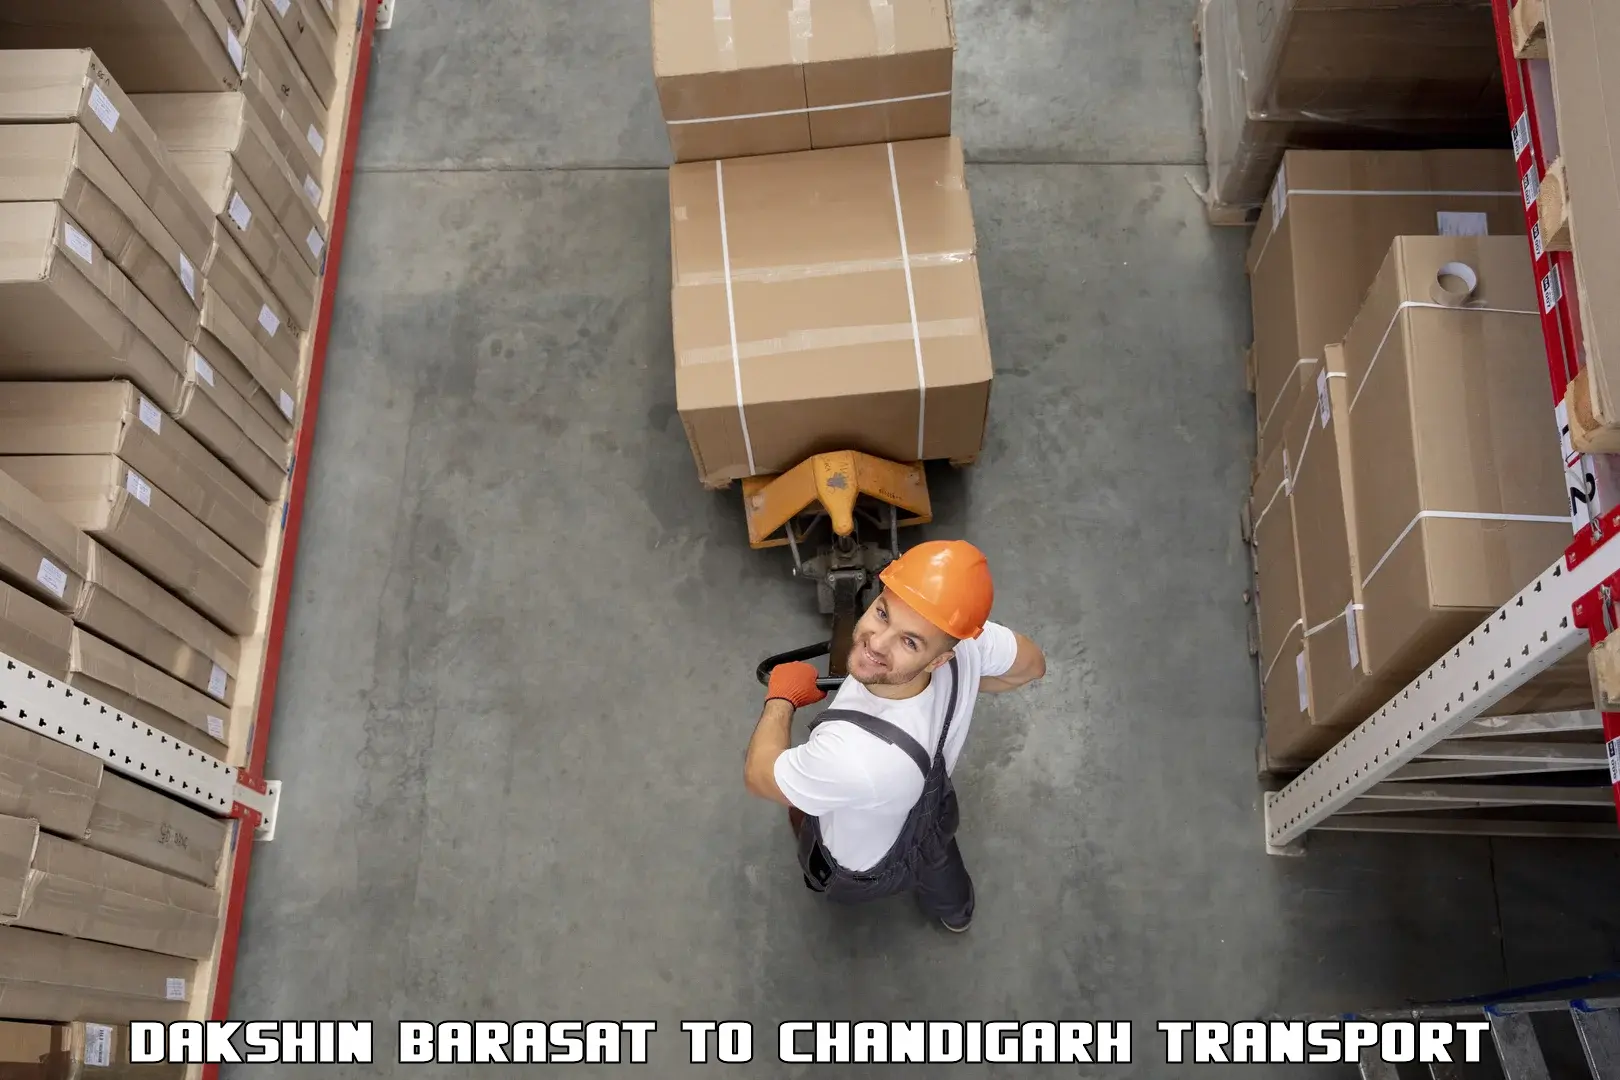 Furniture transport service Dakshin Barasat to Kharar